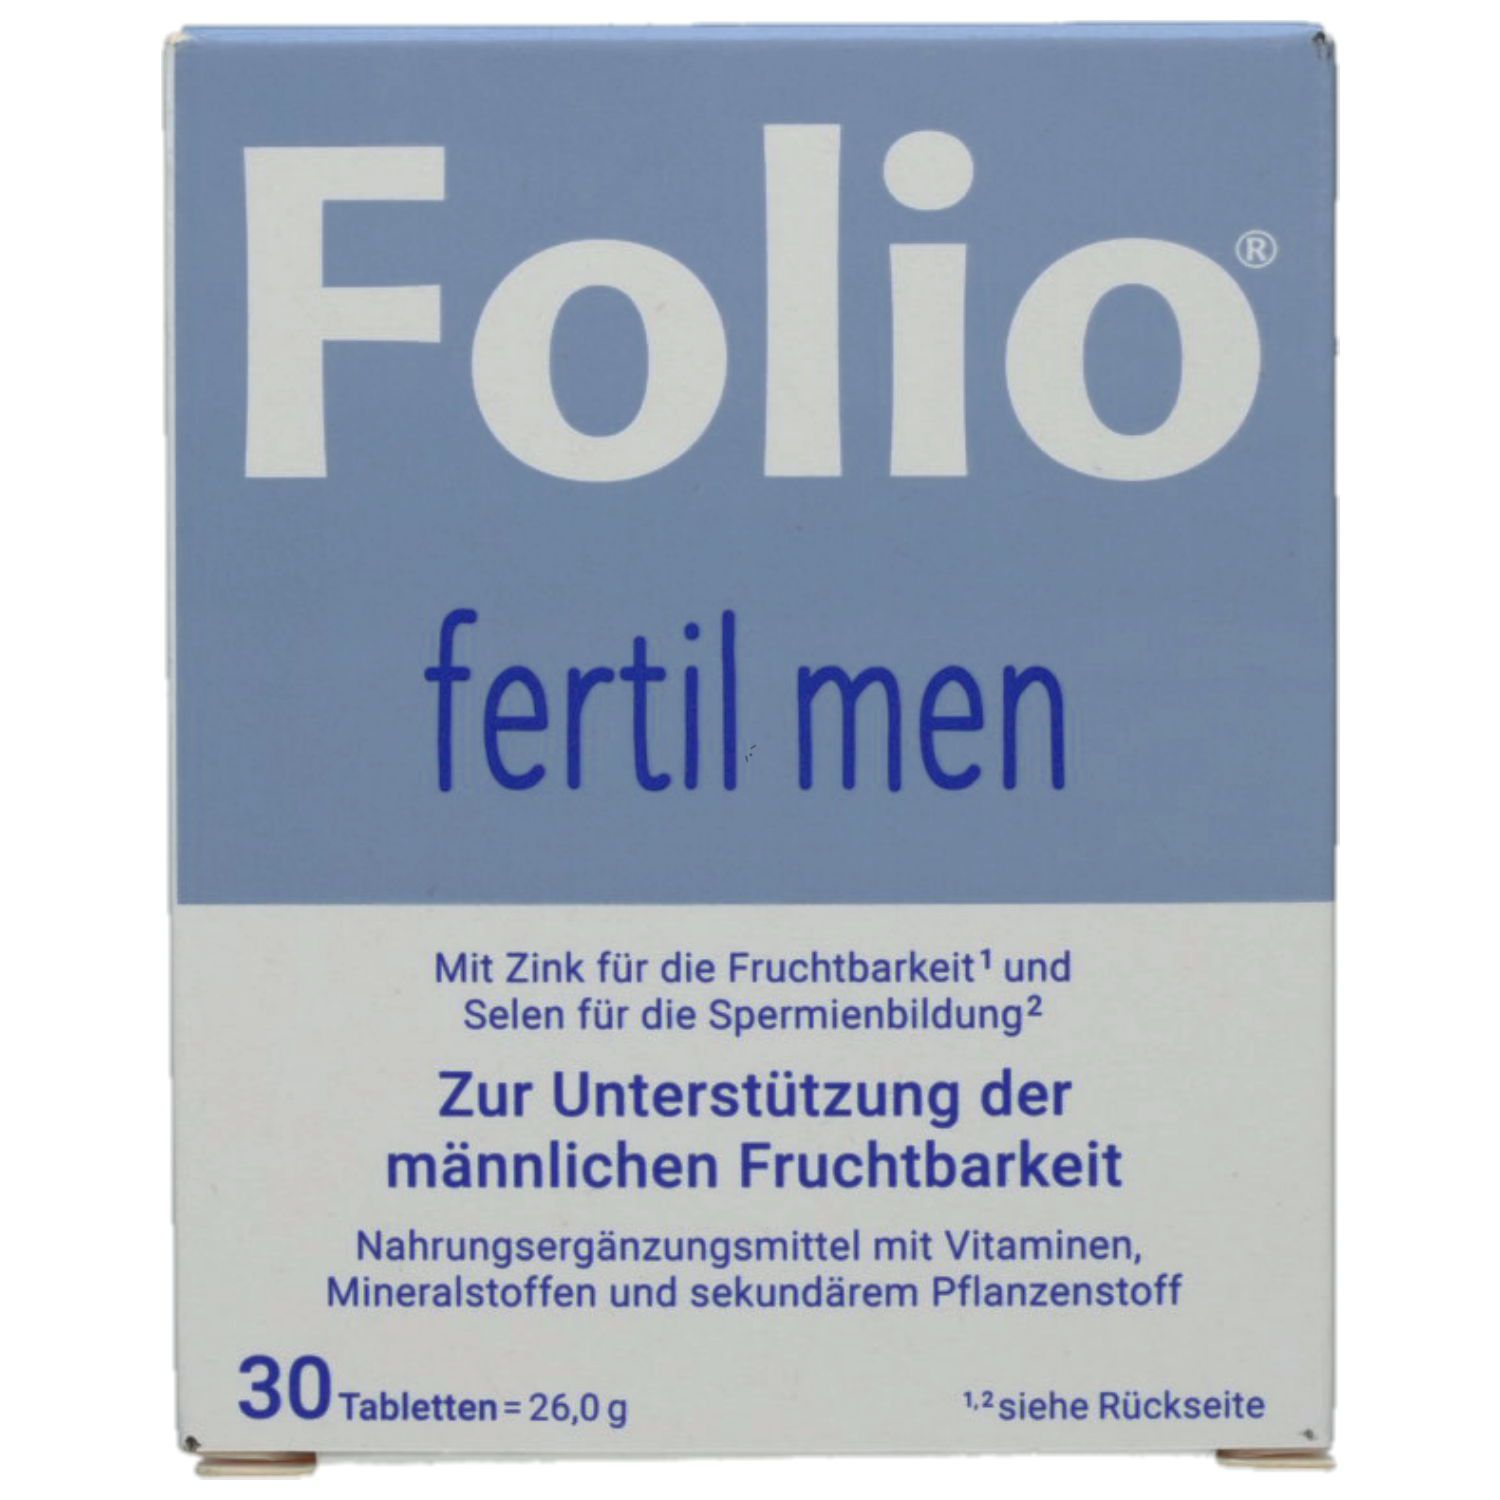 FOLIO fertil men Tabletten